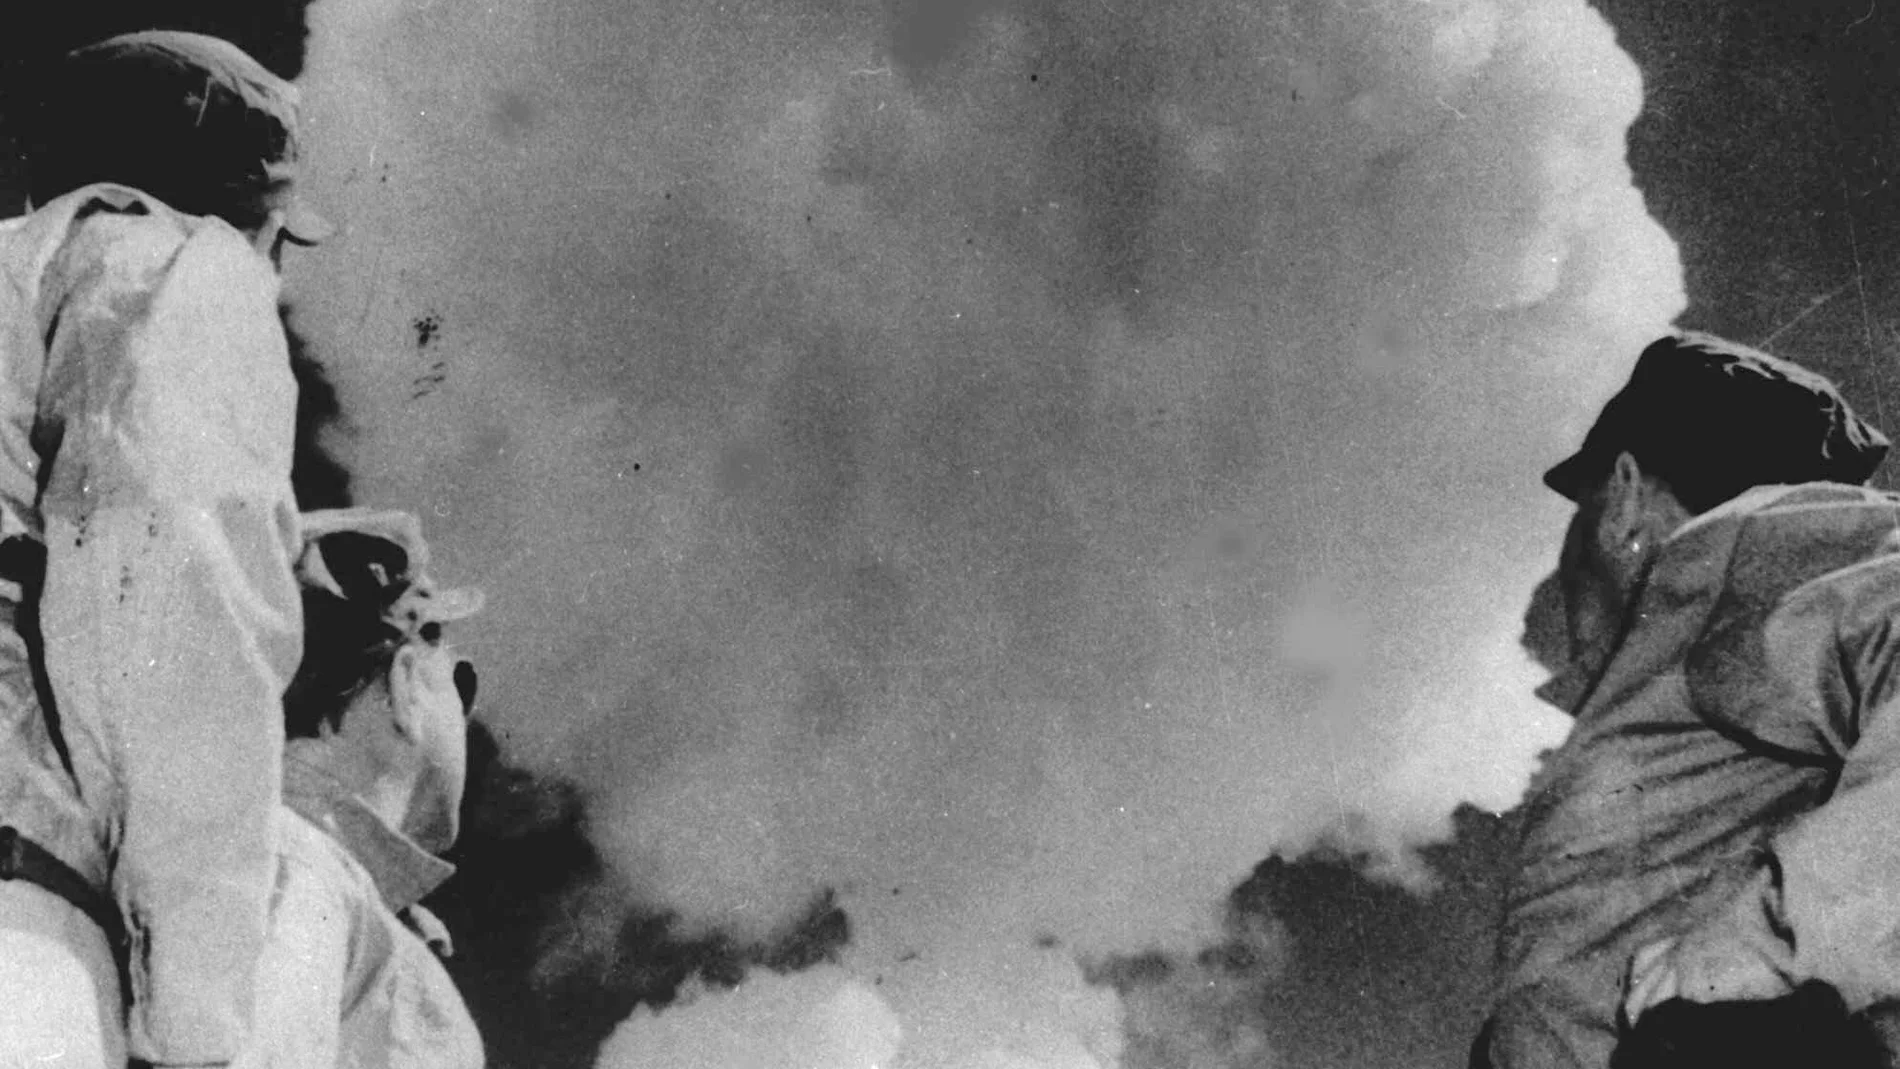 Foto de archivo del 22 de abril de 1952. En ella se ve a soldados estadounidenses observando la nube en de una explosión atómica en Yucca Flat, Nevada. (AP Photo, File)